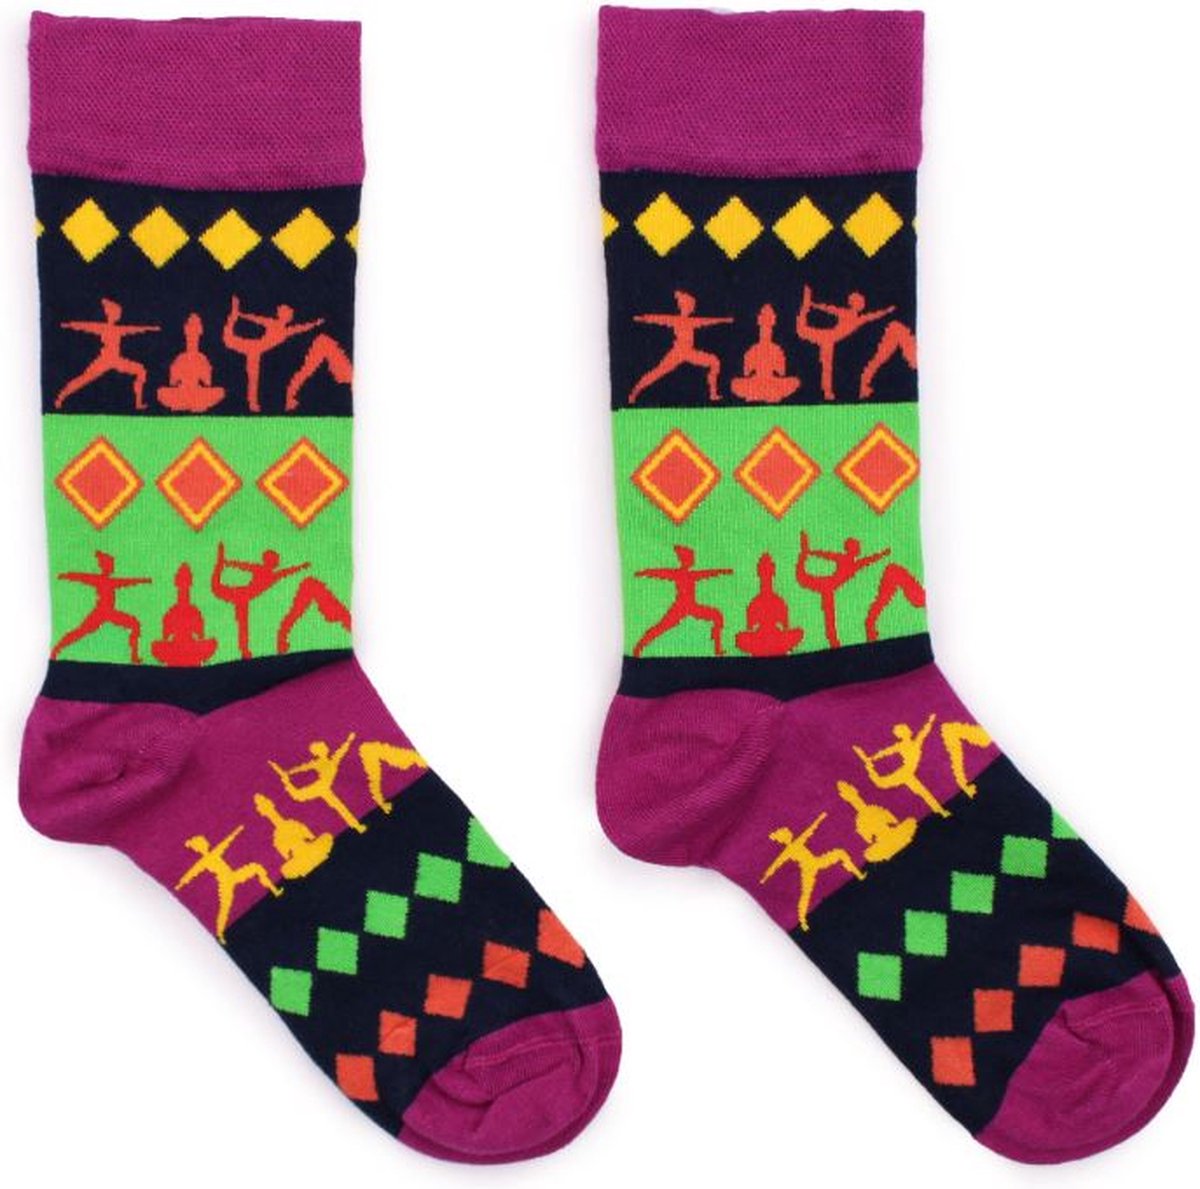 Hop Hare - Bamboe sokken - Vrolijke sokken - Grappige sokken - Yoga- Happy Socks - Unisex - maat 36-40 - Merkloos